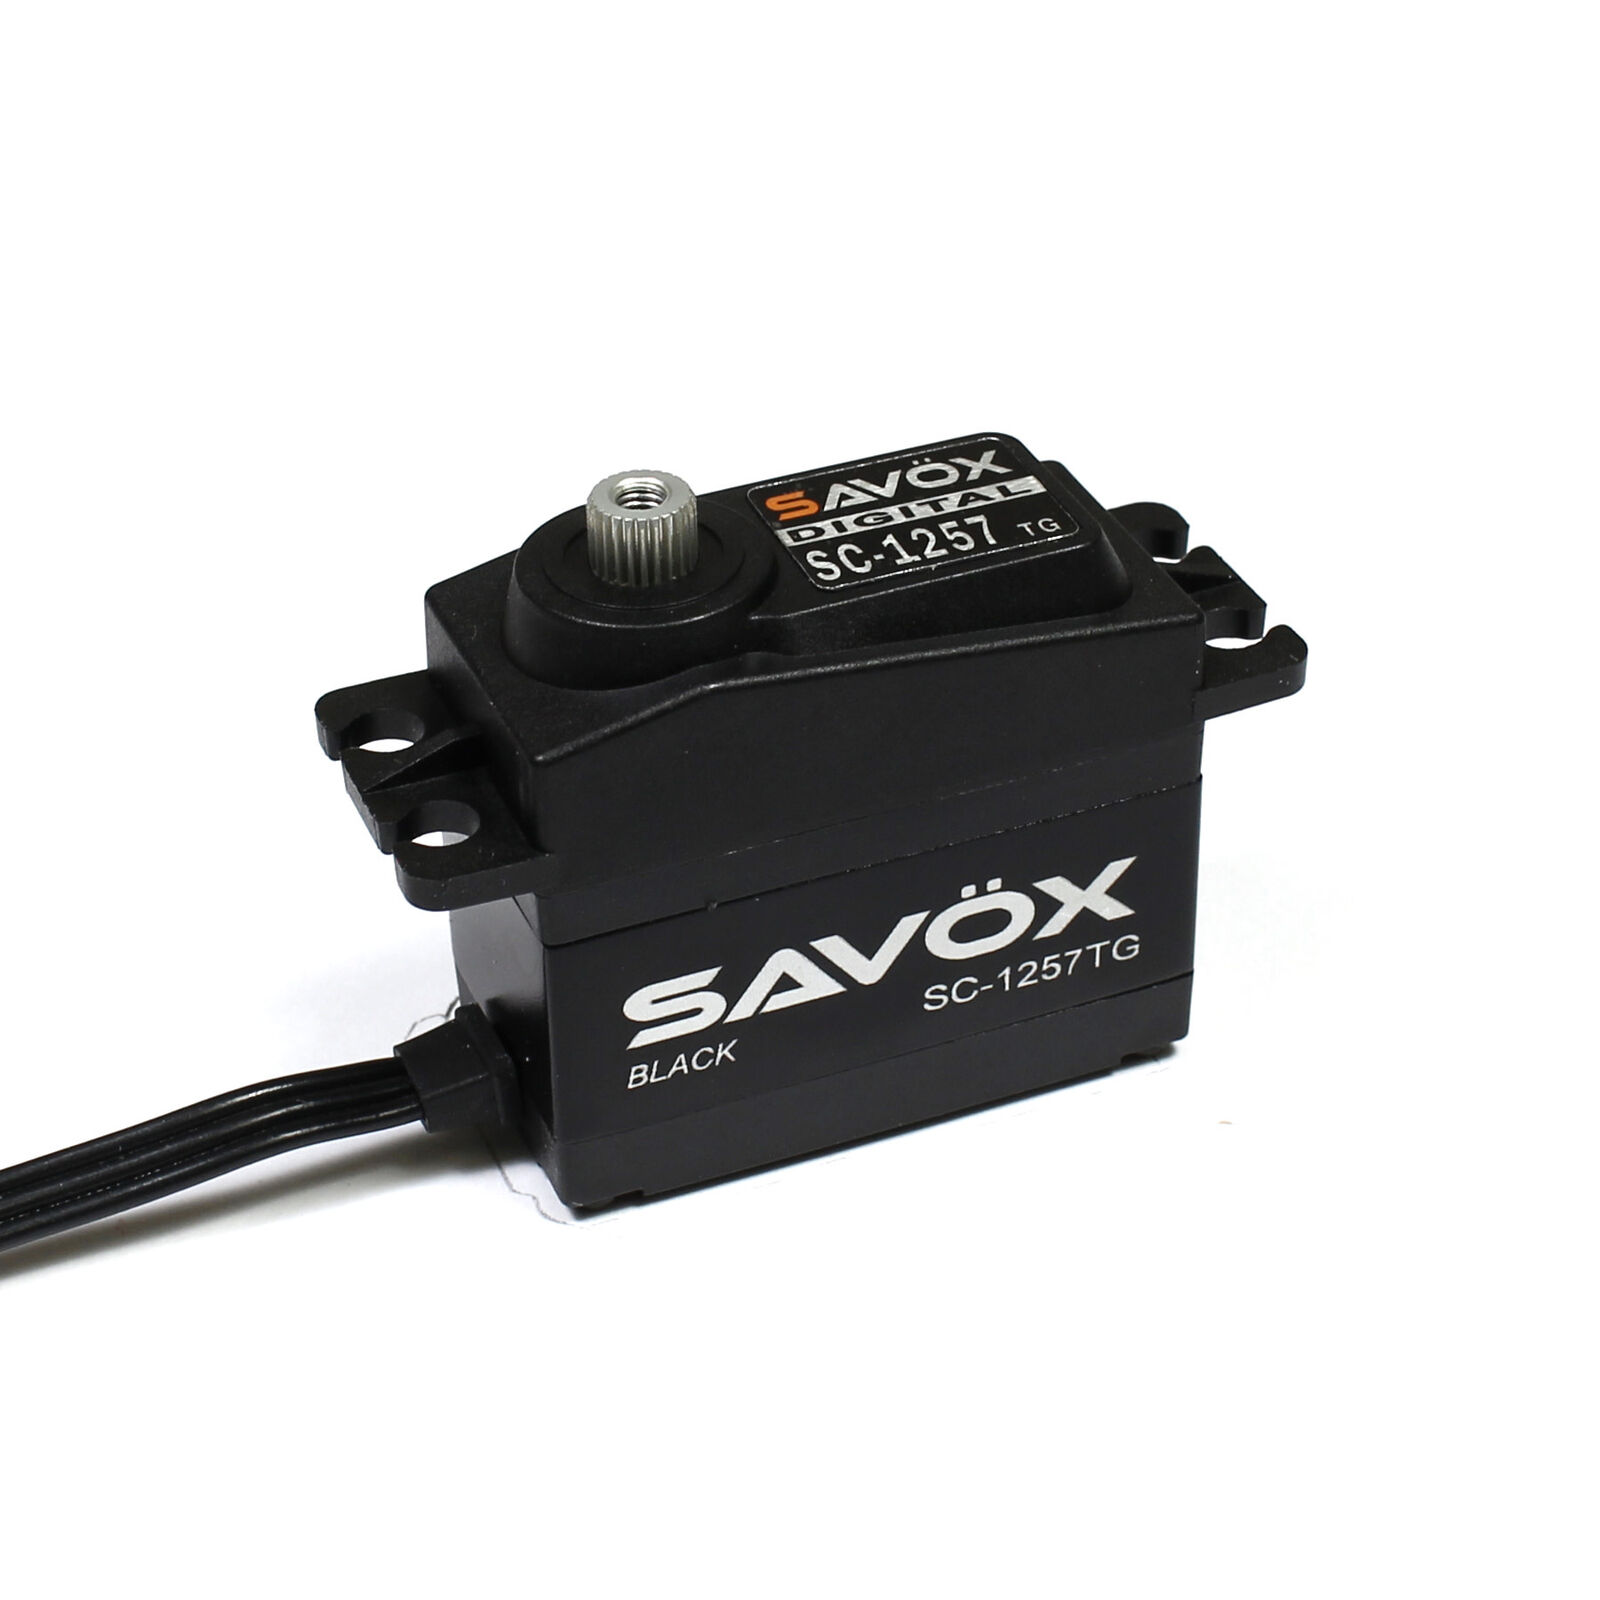 Savox SC-1257TG Black Edition Standard Coreless Digital Servo